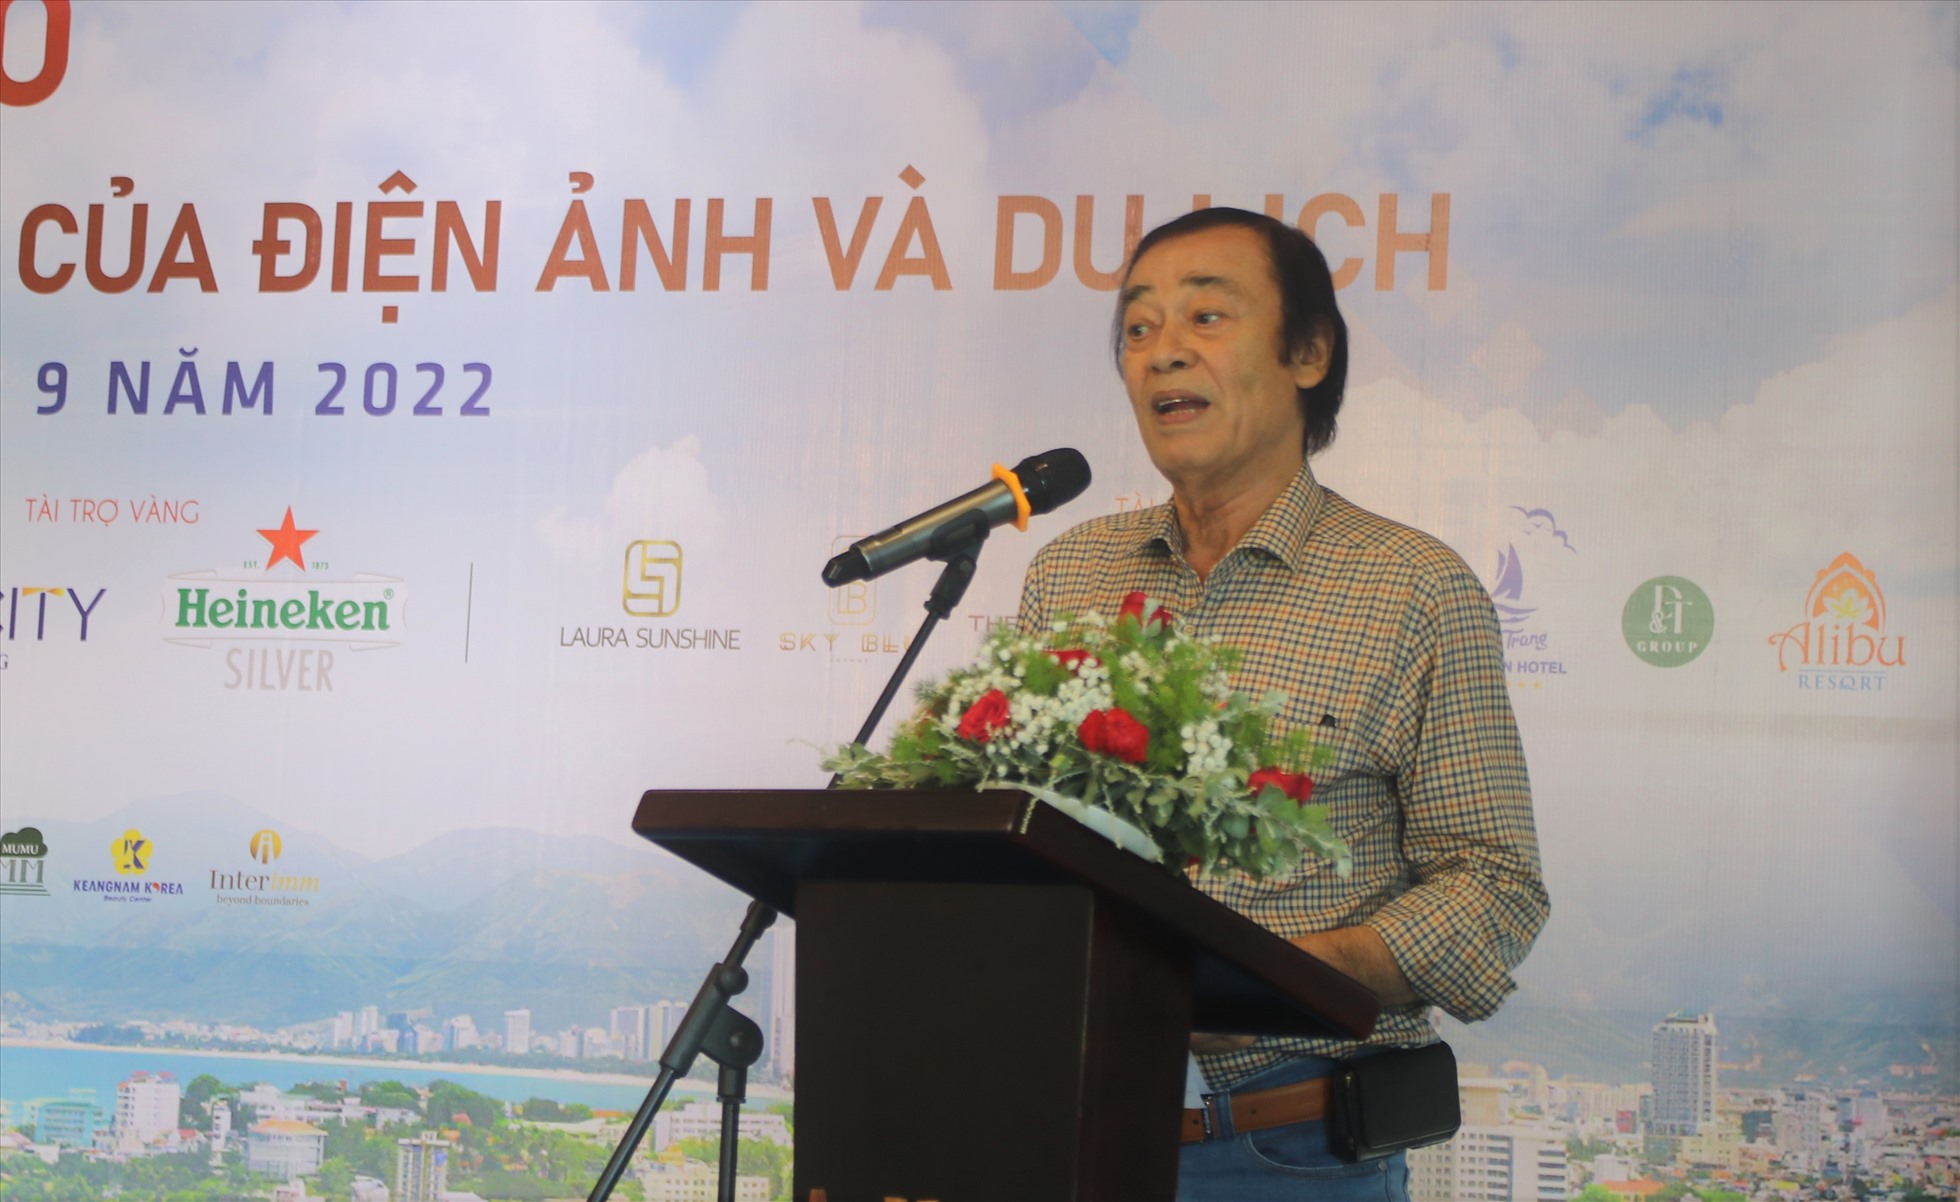 Đạo diễn, NSND Đào Bá Sơn kỳ vọng cái bắt tay của điện ảnh và du lịch về một giải thưởng điện ảnh tầm quốc tế mang tên Nha Trang. Ảnh: P.Linh